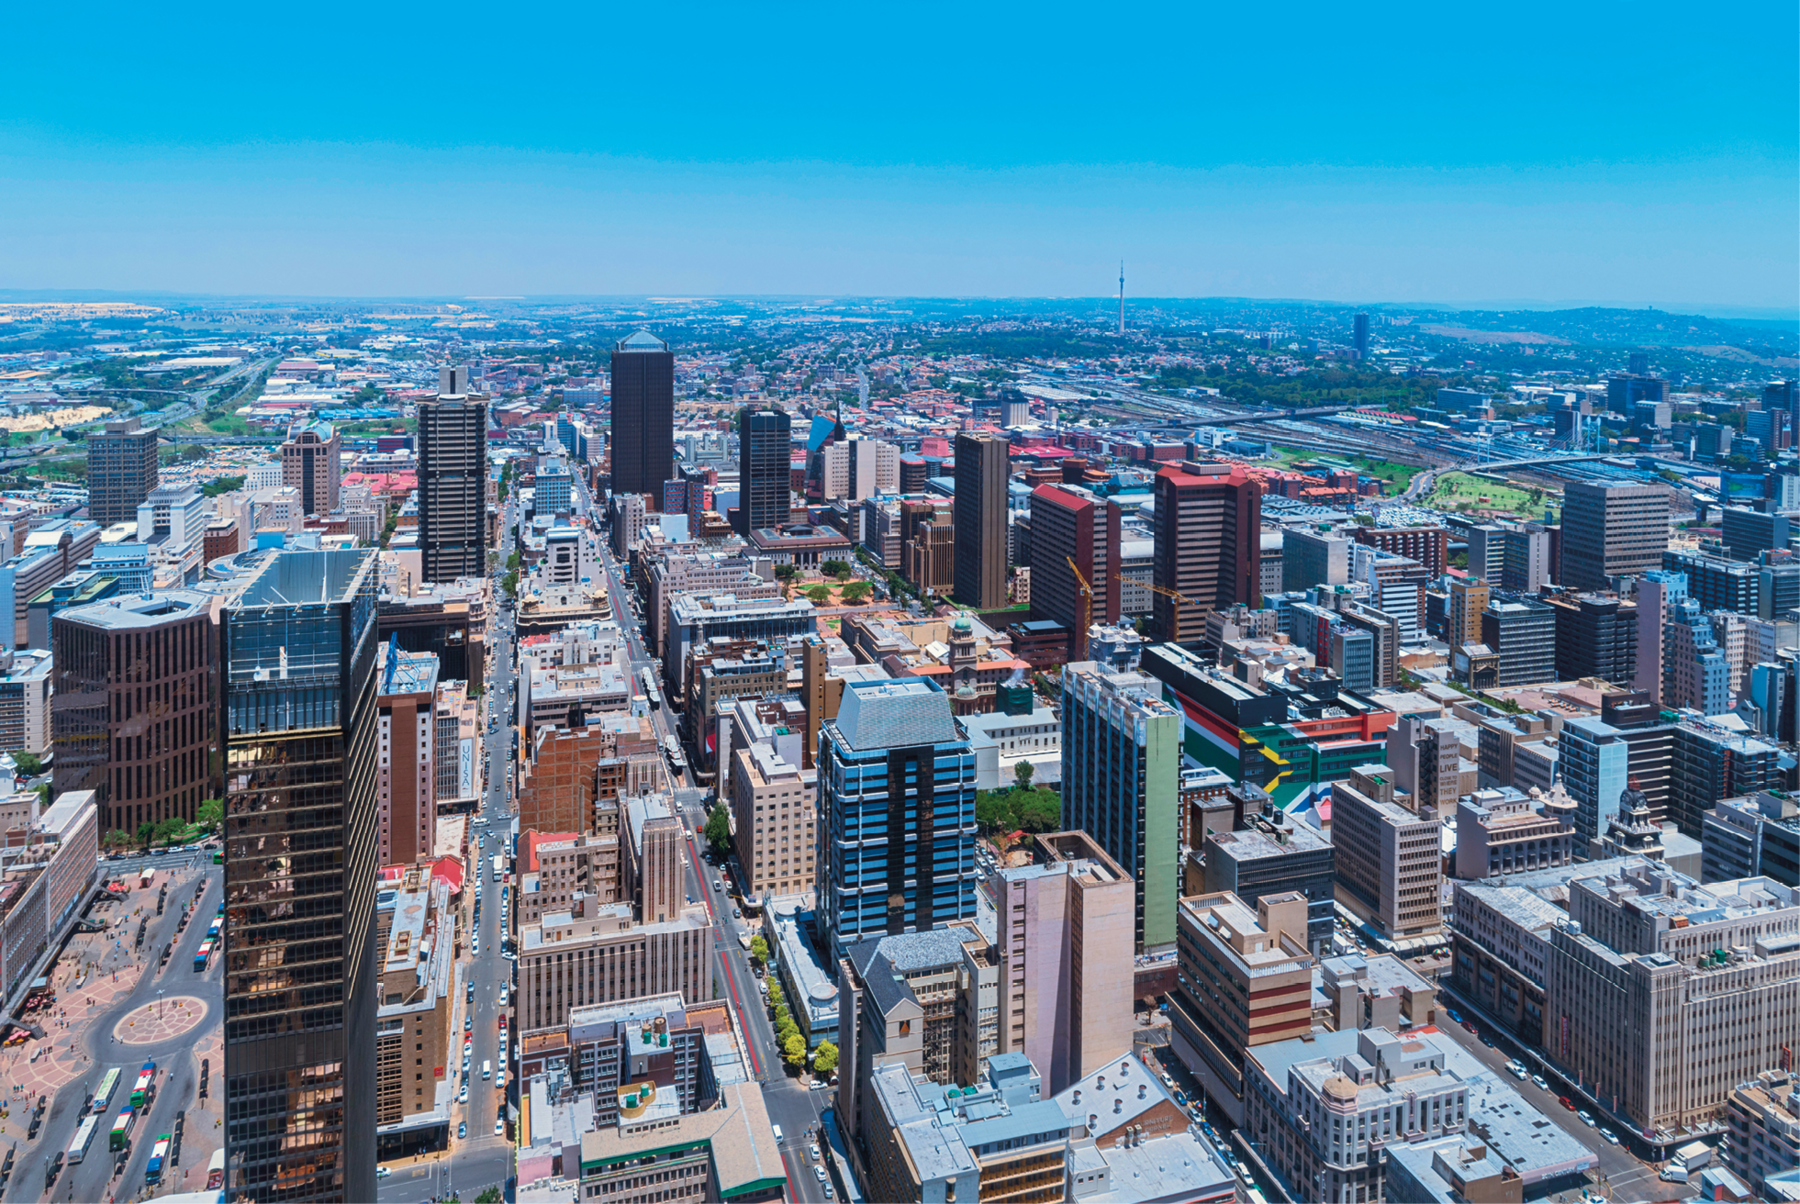 Fotografia. Vista aérea de uma cidade em zona densamente urbanizada, repleta de edifícios altos.